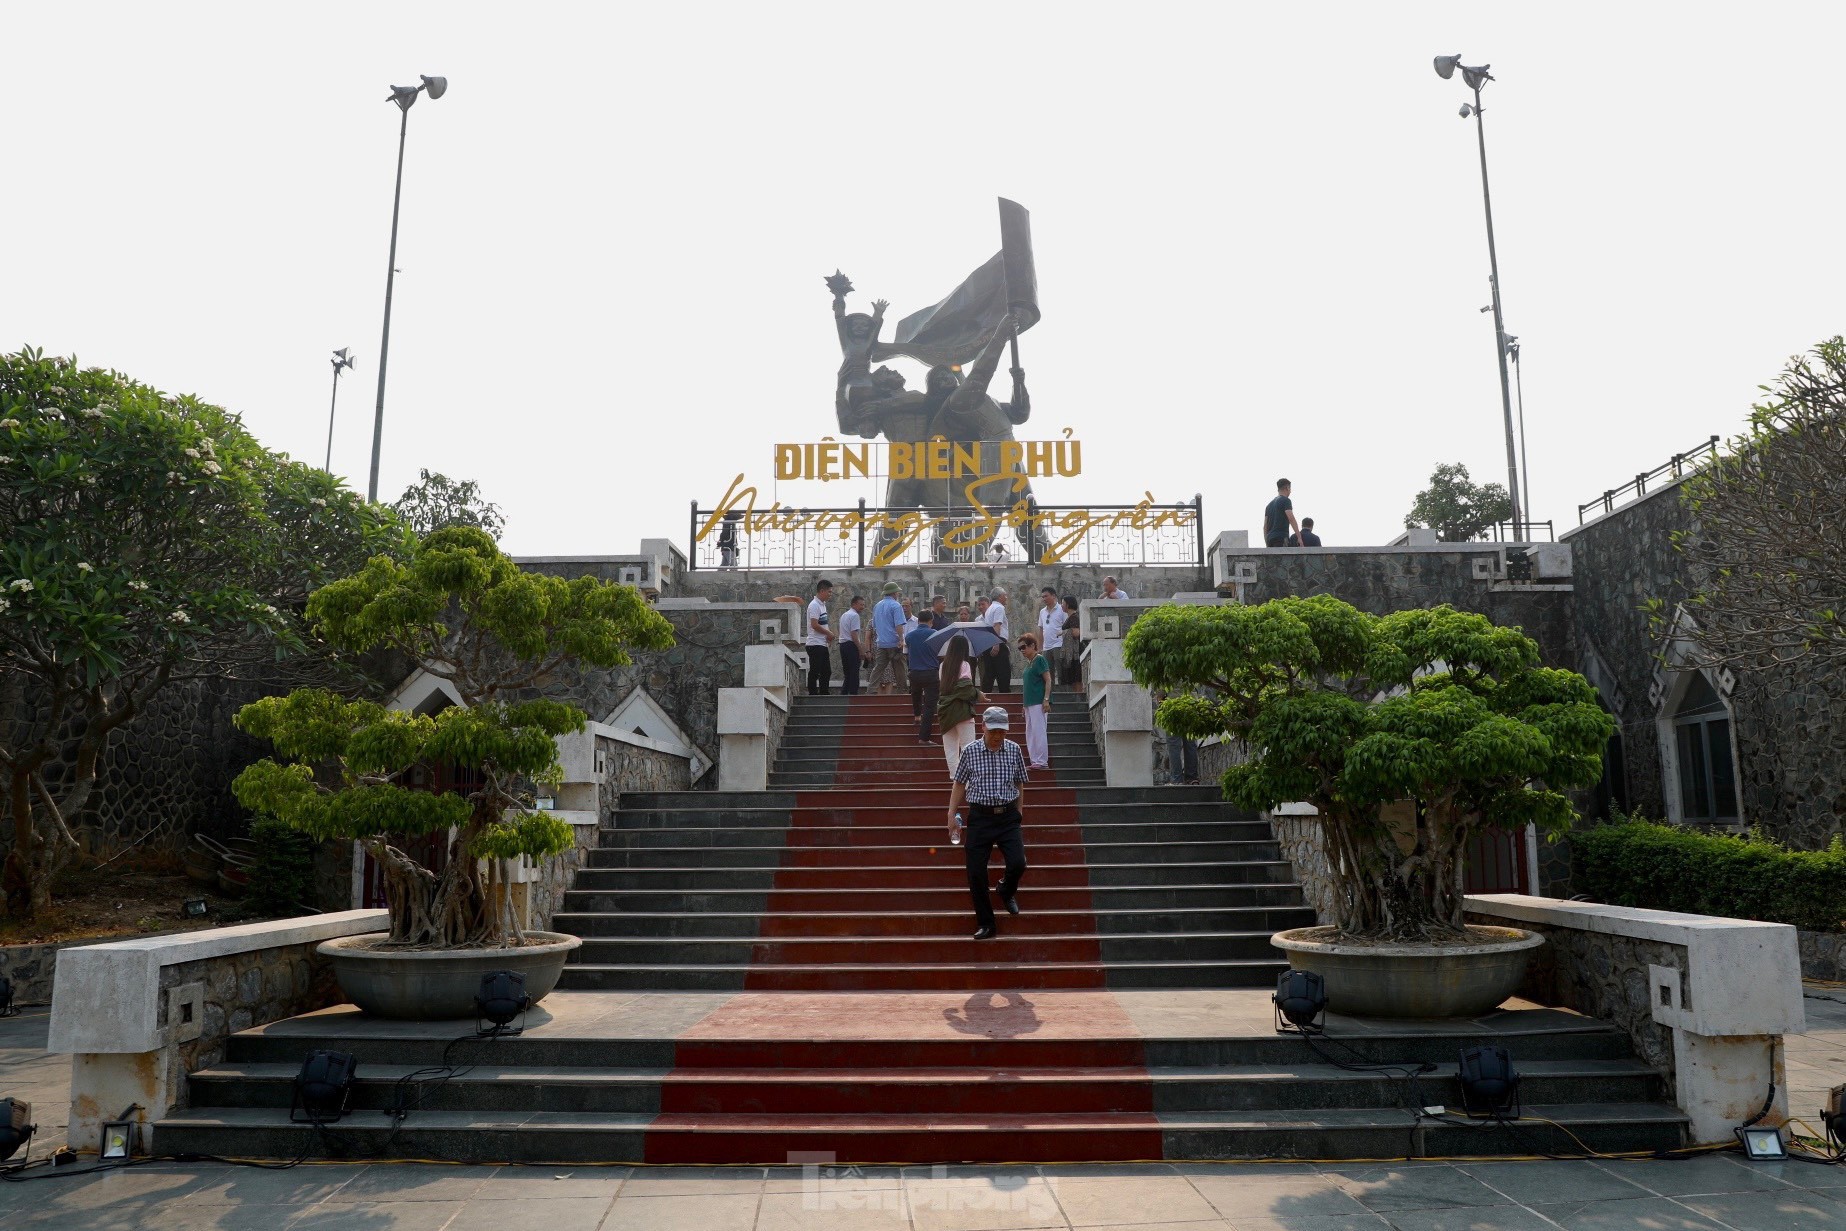 Tượng đài Chiến thắng Điện Biên Phủ những ngày gần đại lễ ảnh 1